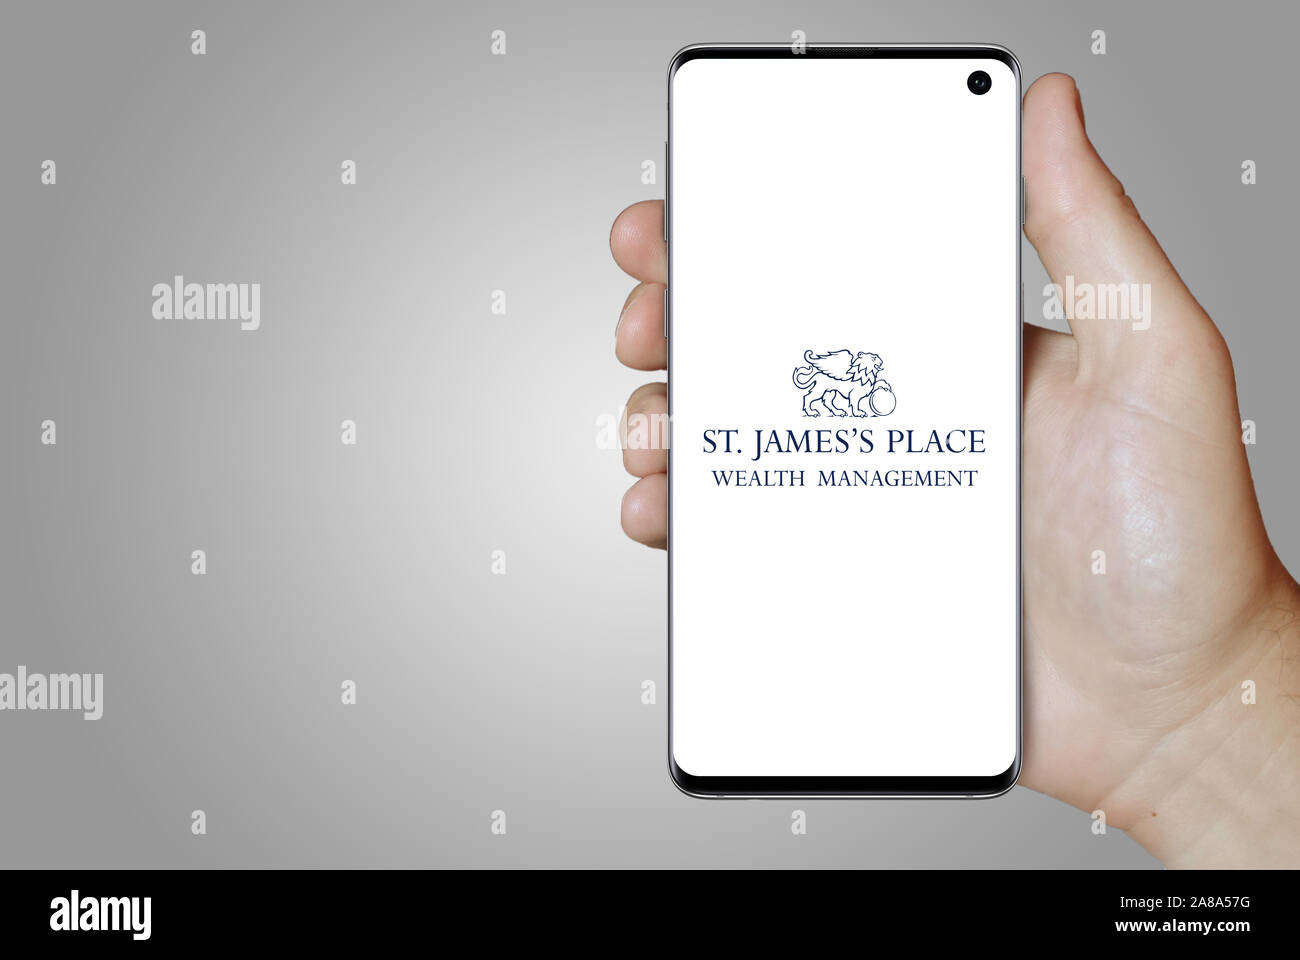 Il logo della società pubblica St. James's Place plc visualizzato su uno smartphone. Sfondo grigio. Credito: PIXDUCE Foto Stock